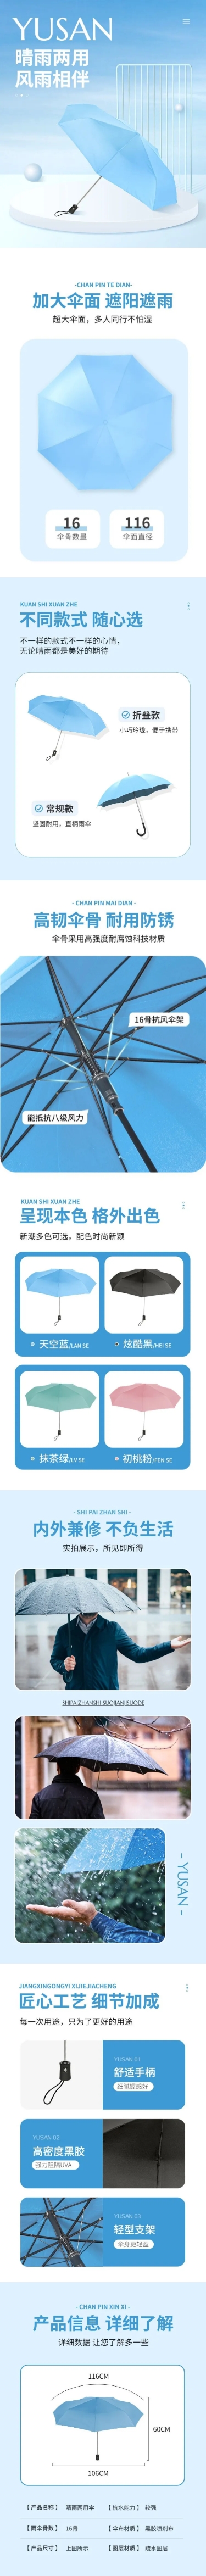 电商家居百货品牌雨伞商品介绍详情页